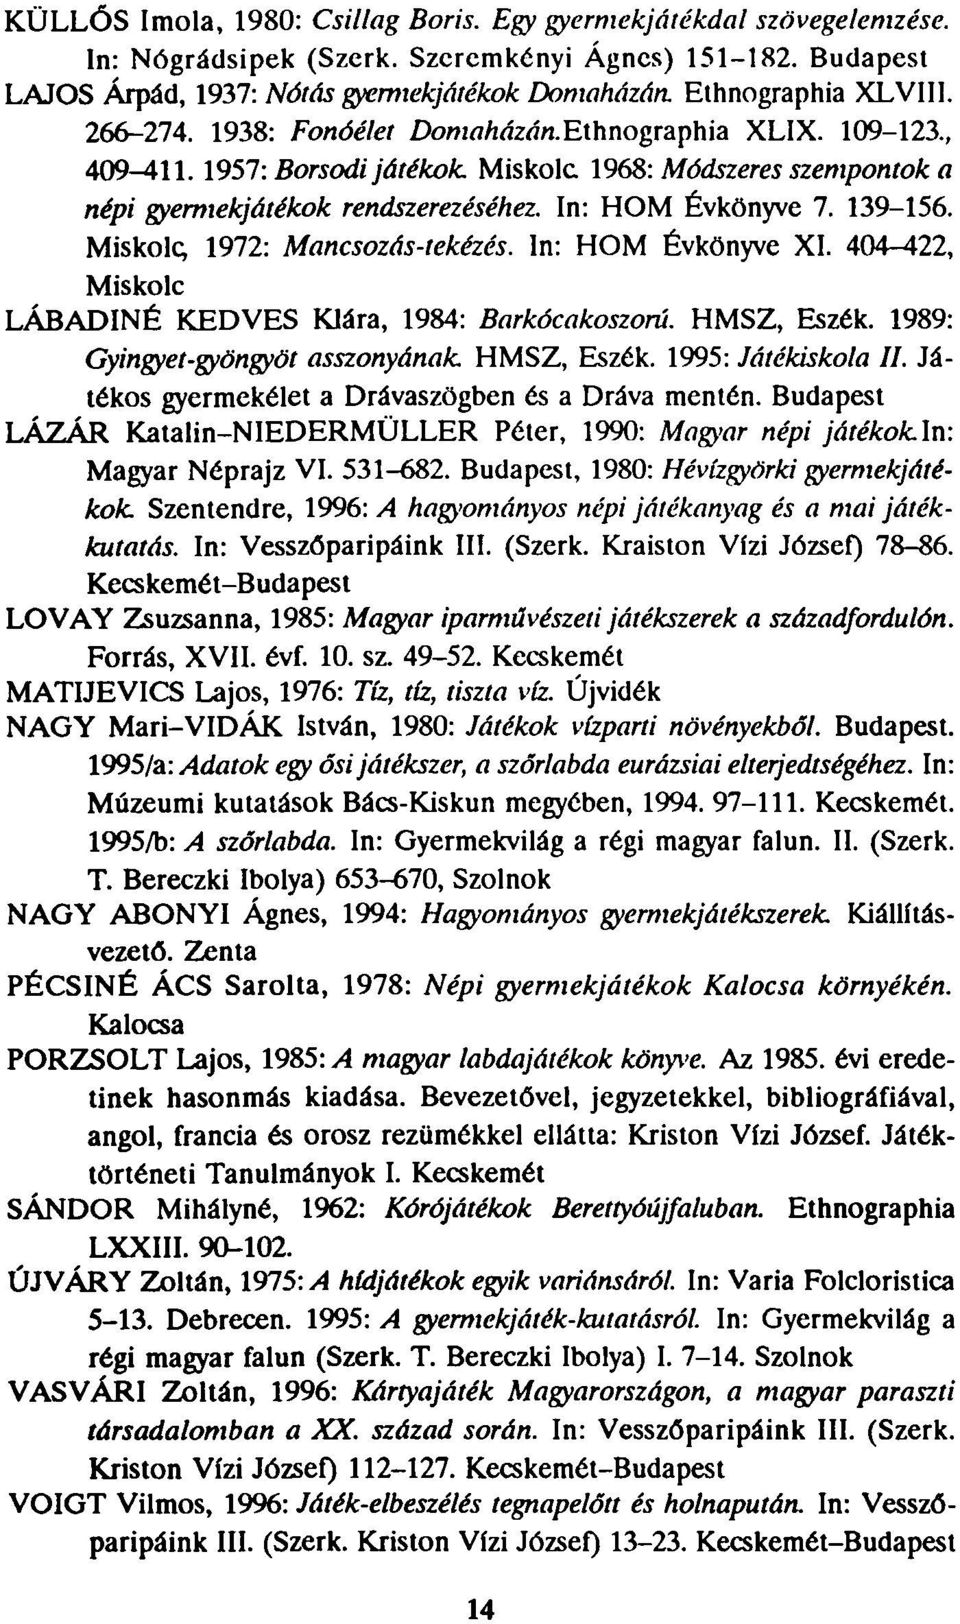 1957: Borsodi játékok Miskolc 1968: Módszeres szempontok a népi gyermekjátékok rendszerezéséhez. In: HOM Évkönyve 7. 139-156. Miskolc 1972: Mancsozás-tekézés. In: HOM Évkönyve XI.